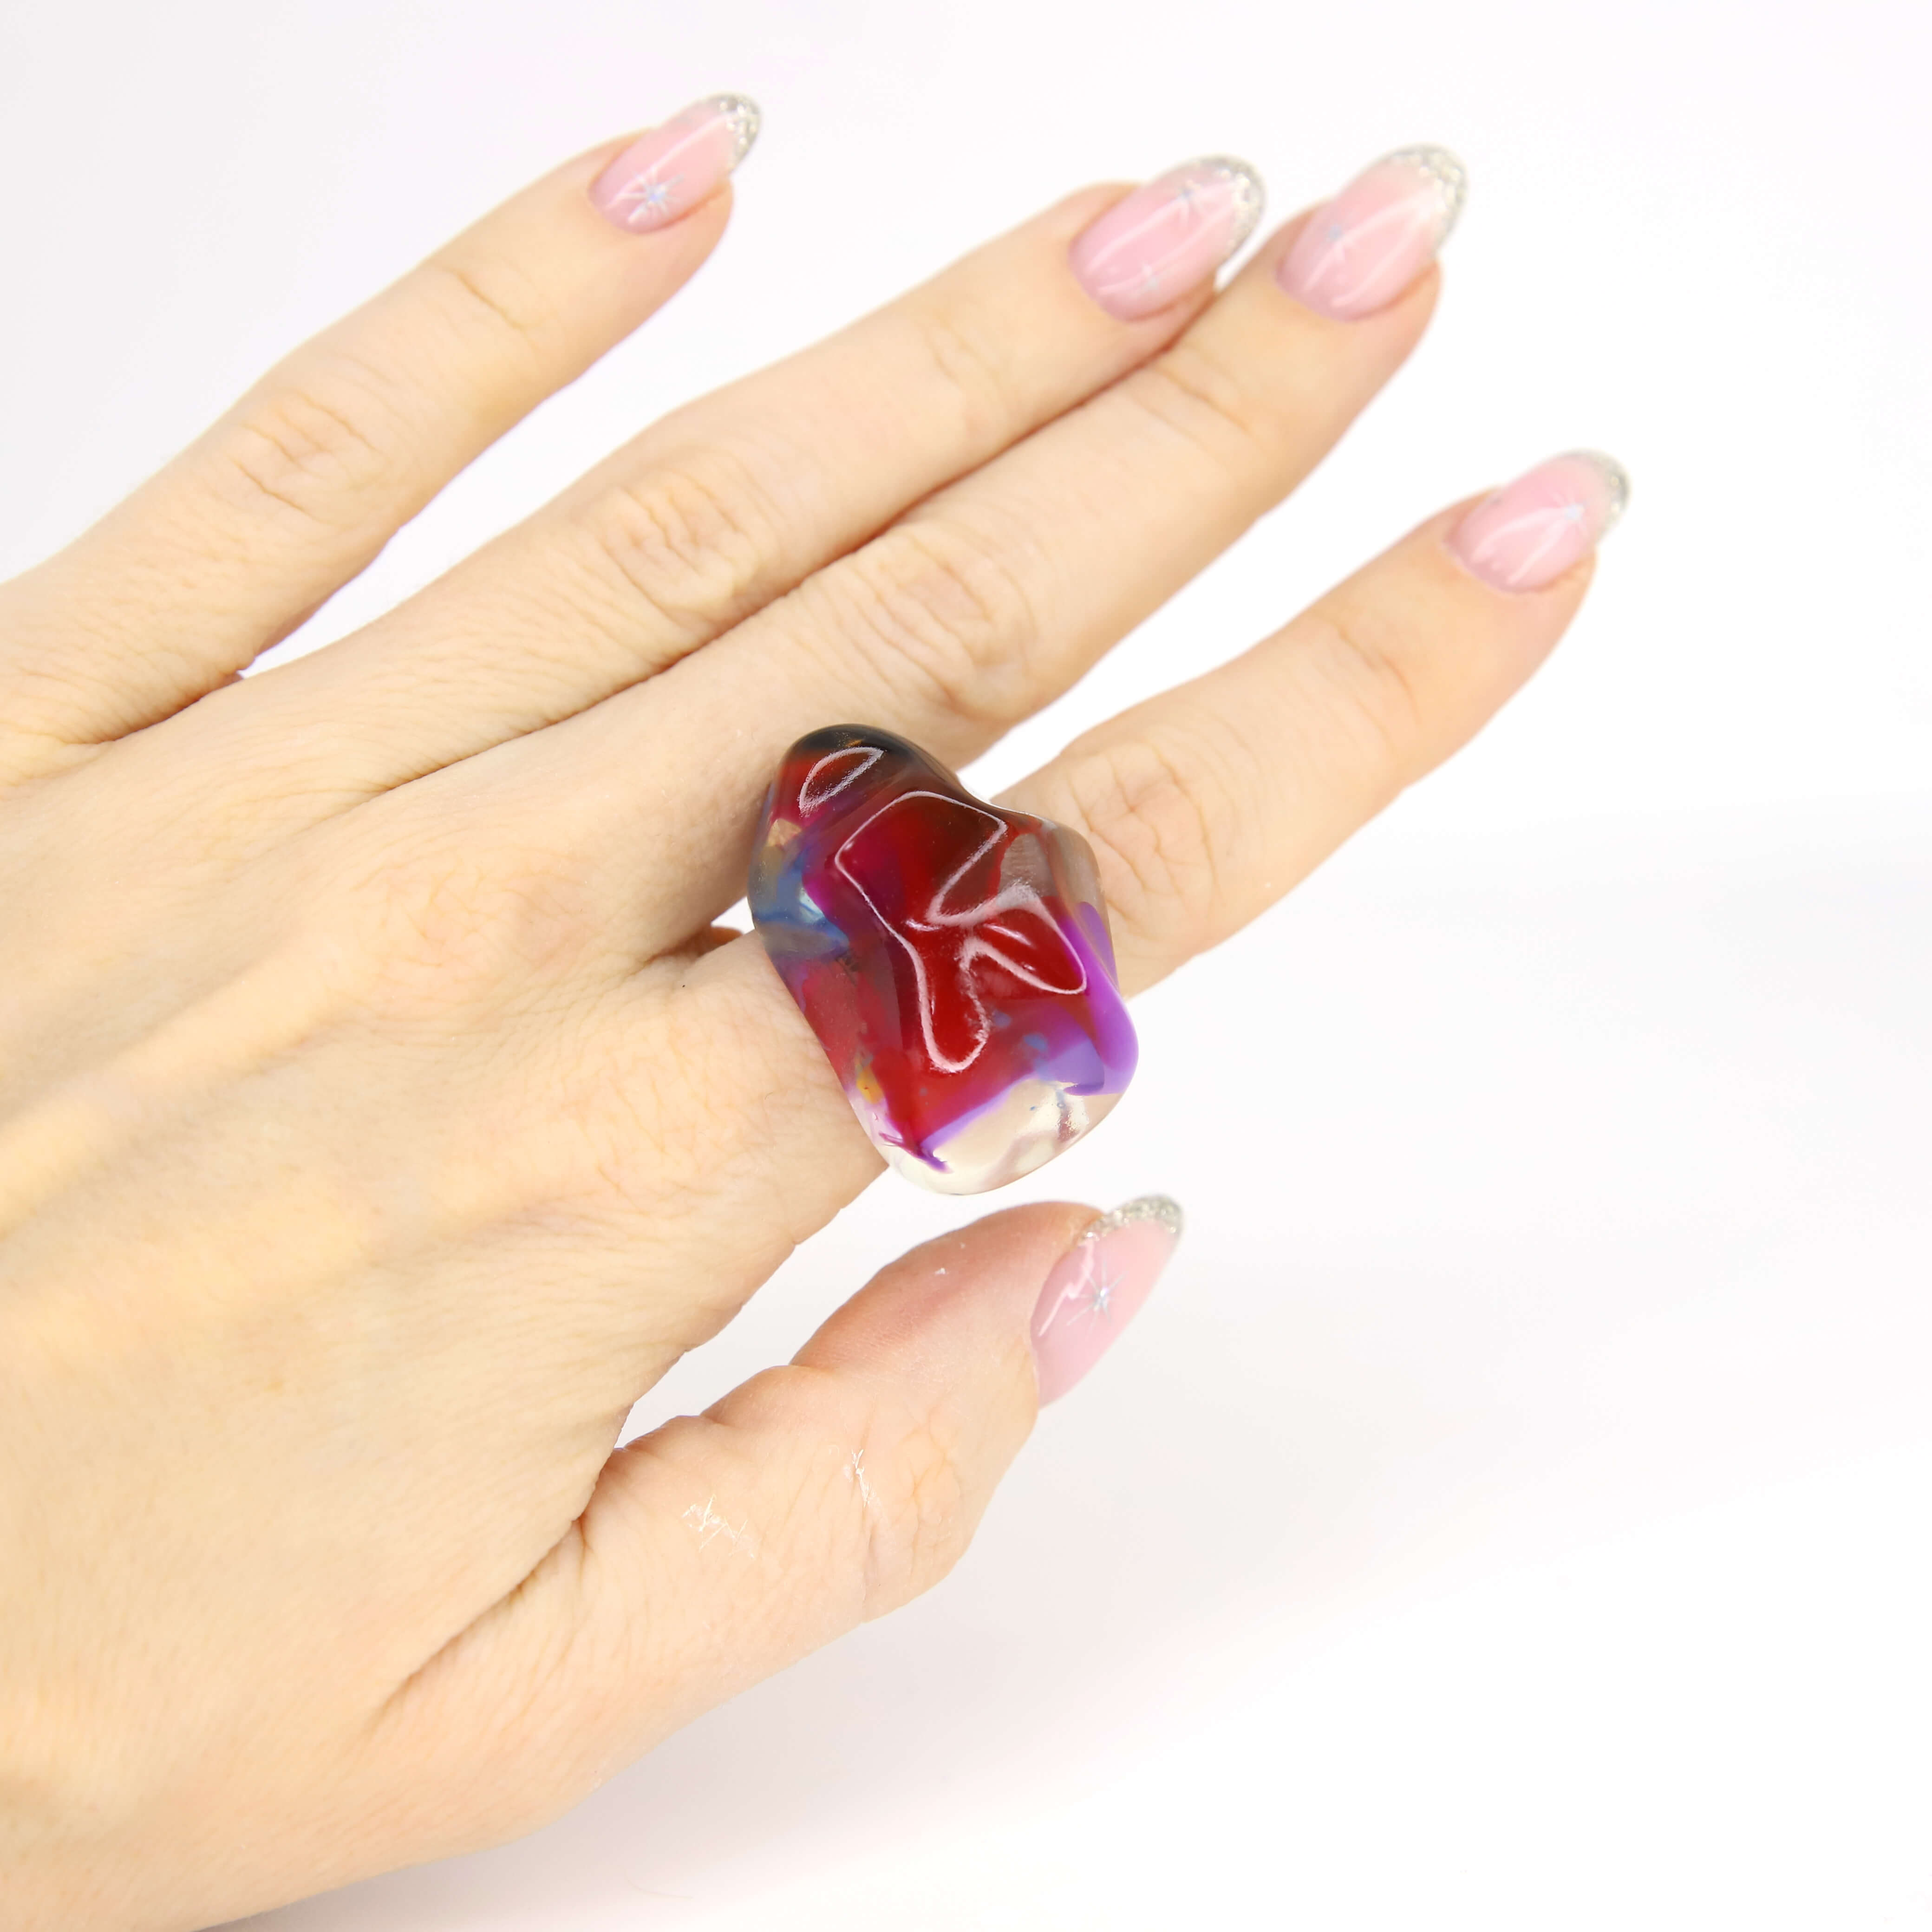 Винтажное кольцо Sobral размер 18, цвет Красный, фото 2